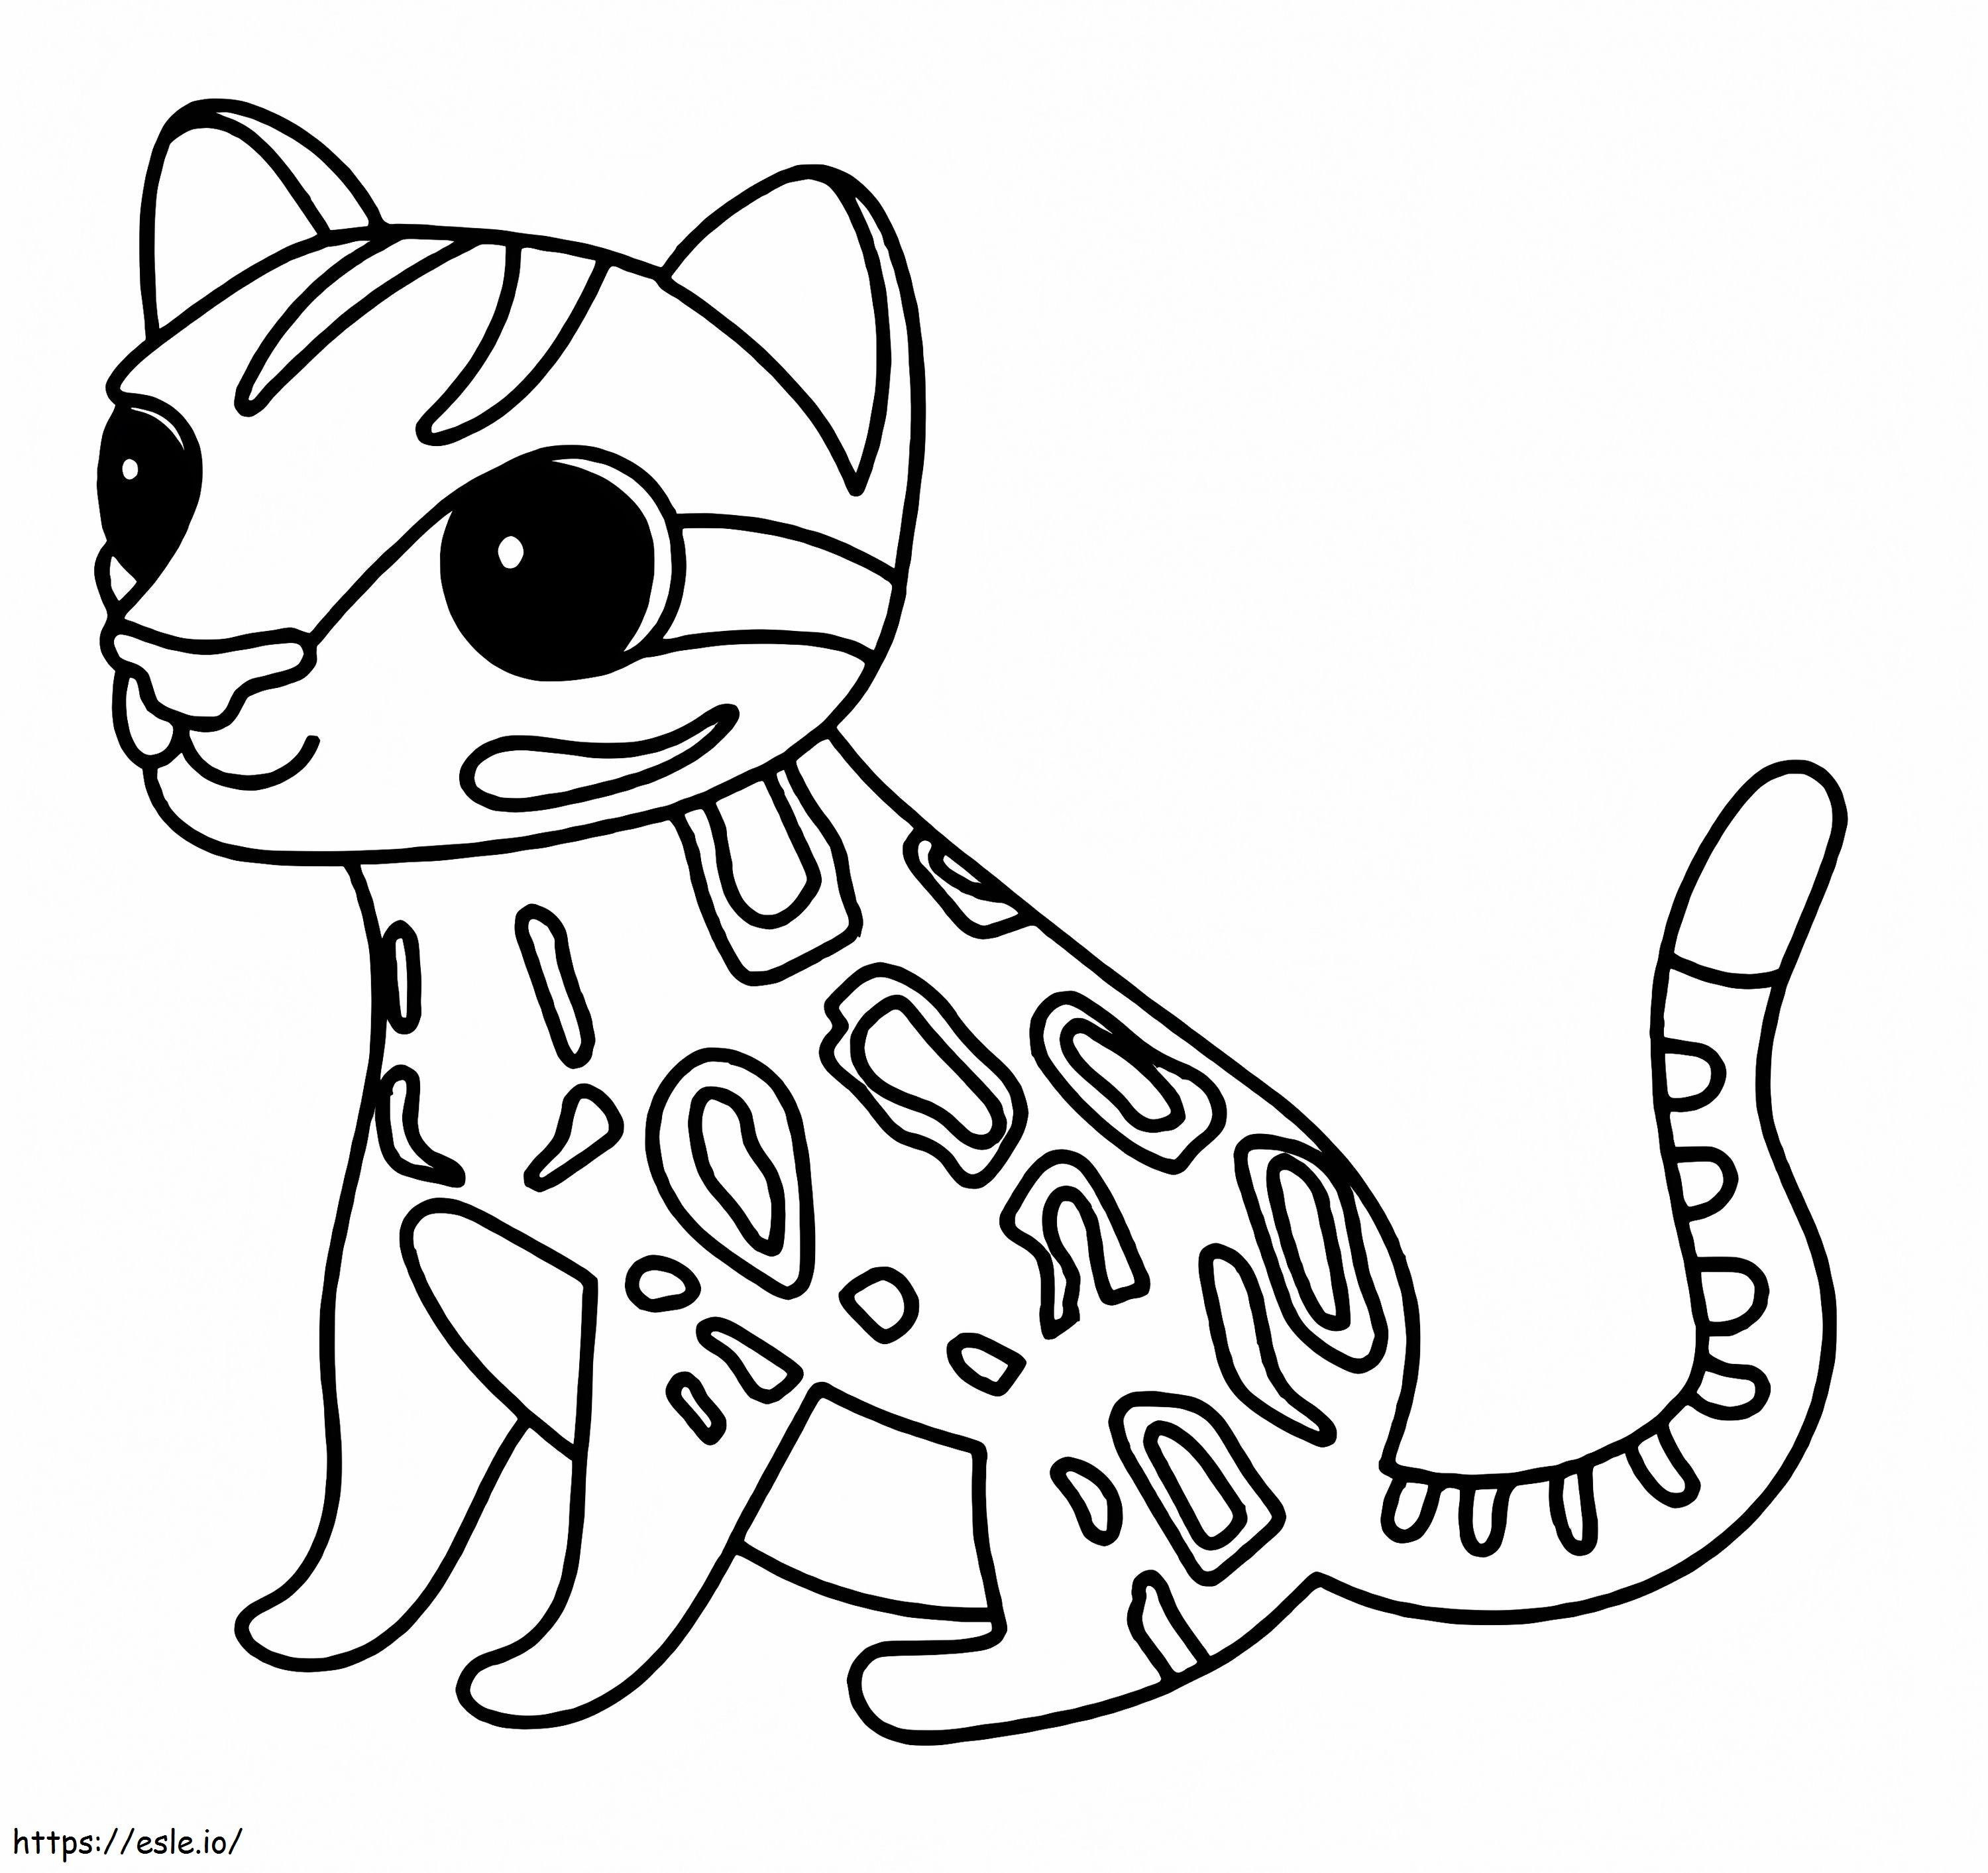 Adorabile gattopardo da colorare